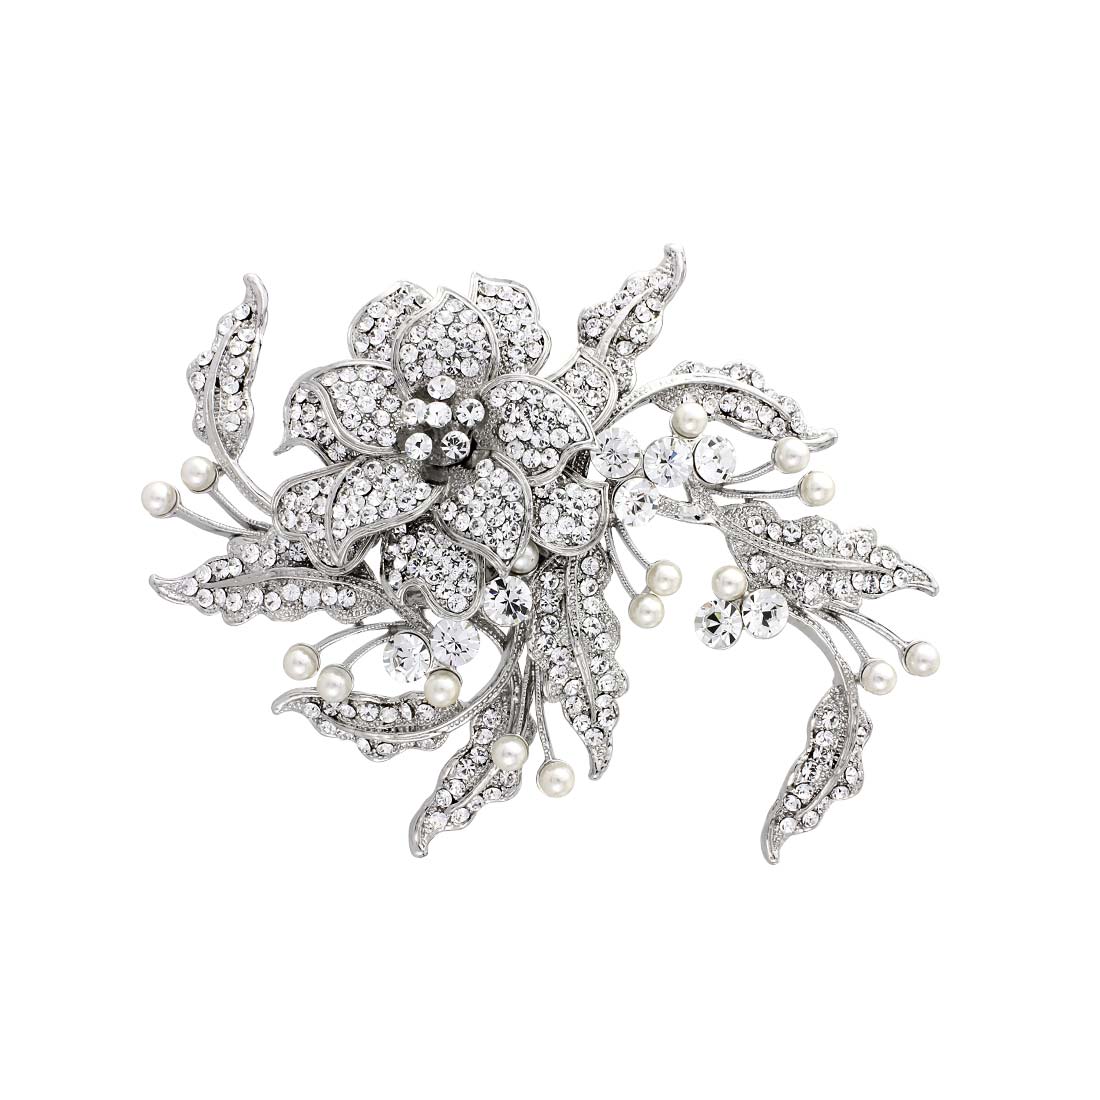 Trailing Petals Floral Crystal & Pearl Silver Wedding Headpiece